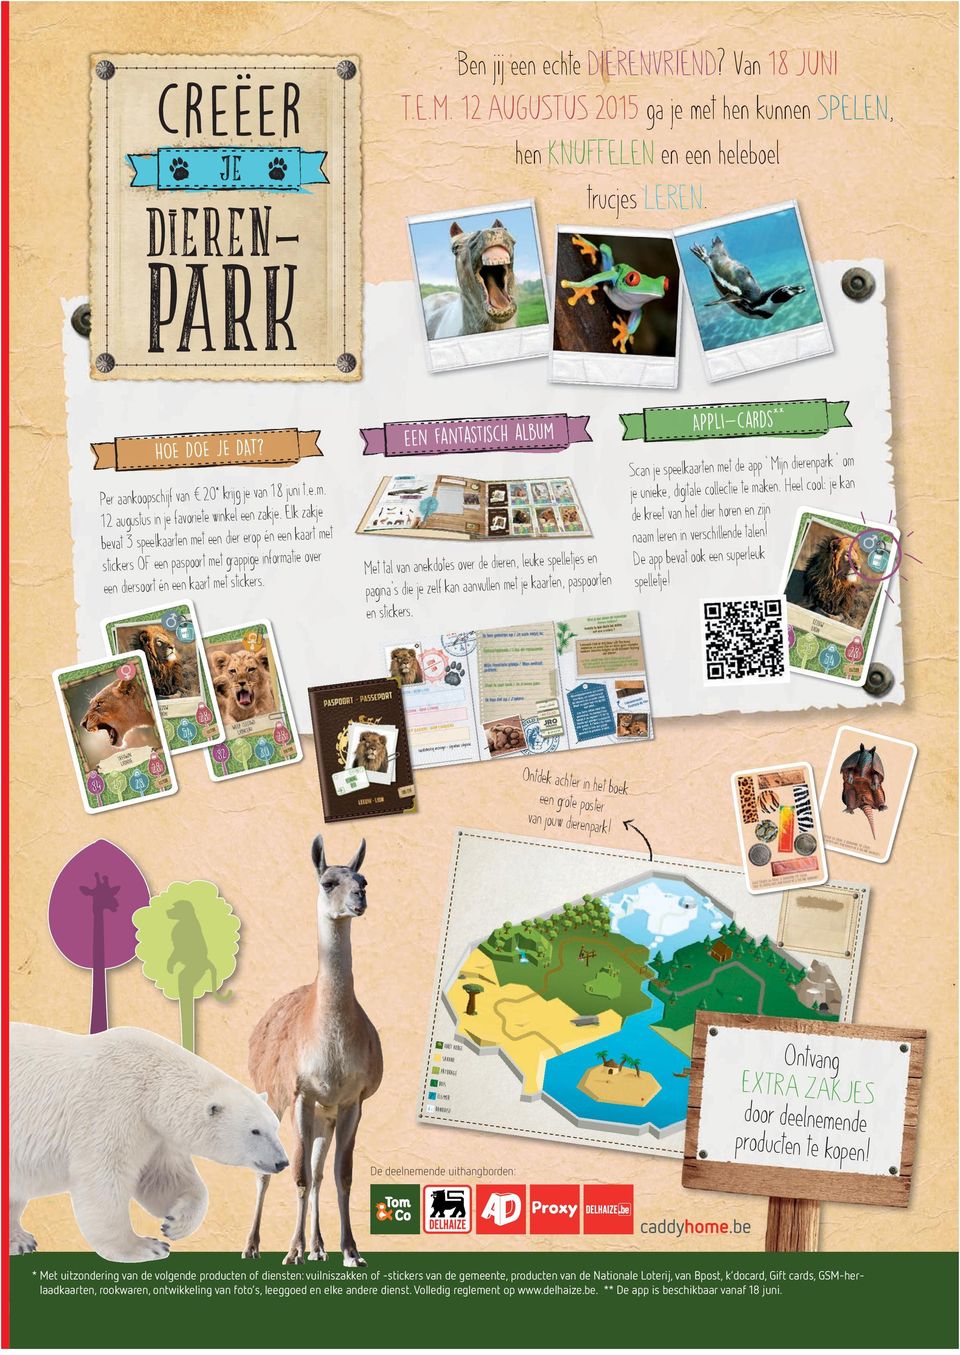 Elk zakje bevat 3 speelkaarten met een dier erop én een kaart met stickers OF een paspoort met grappige informatie over een diersoort én een kaart met stickers.